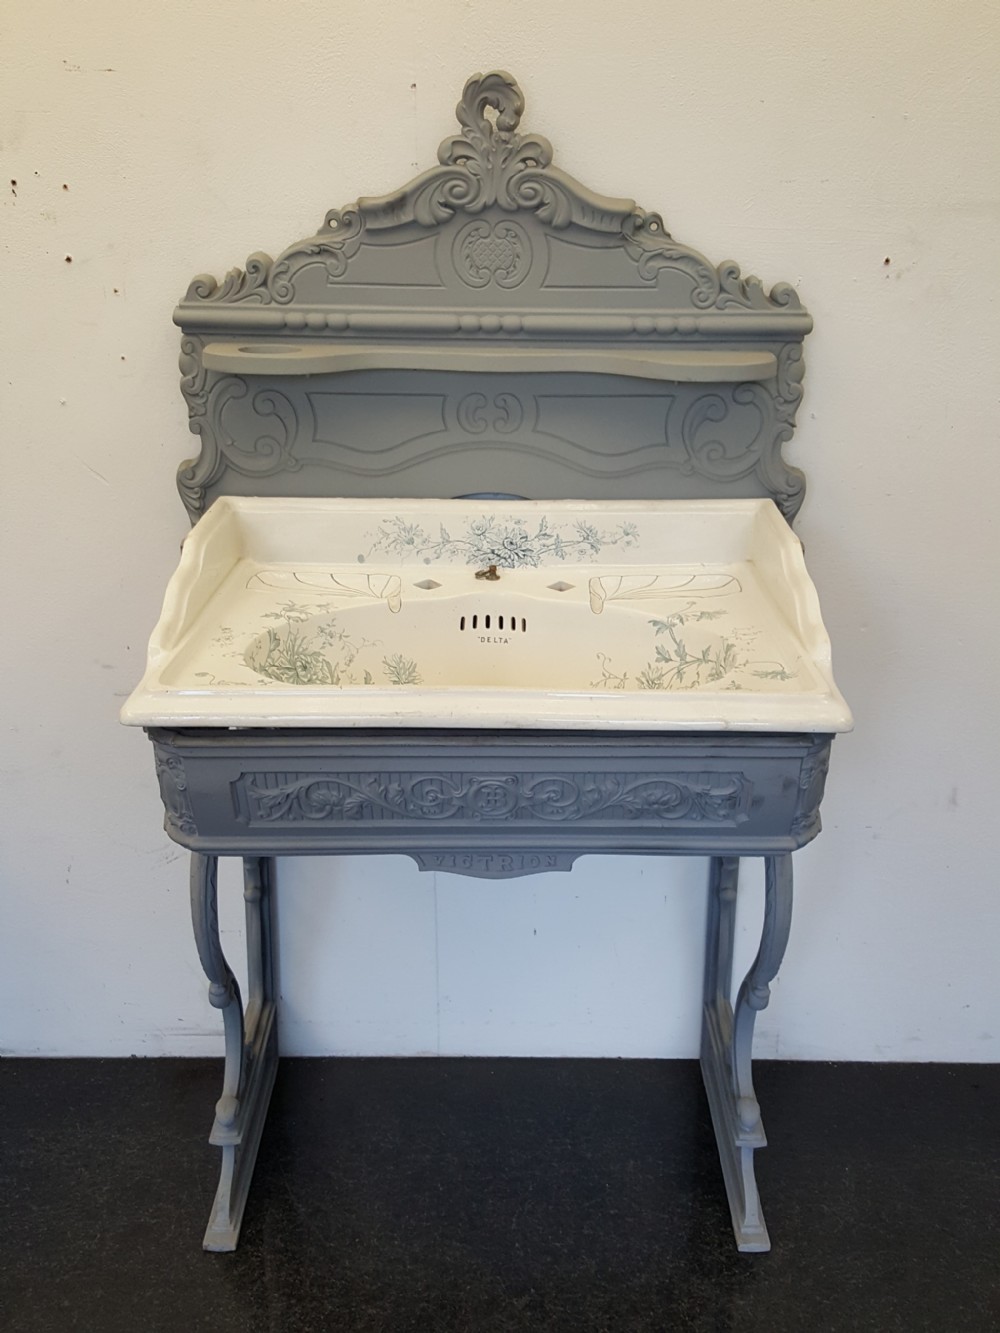 victorian cast iron sink stand chrysanthemum design basin